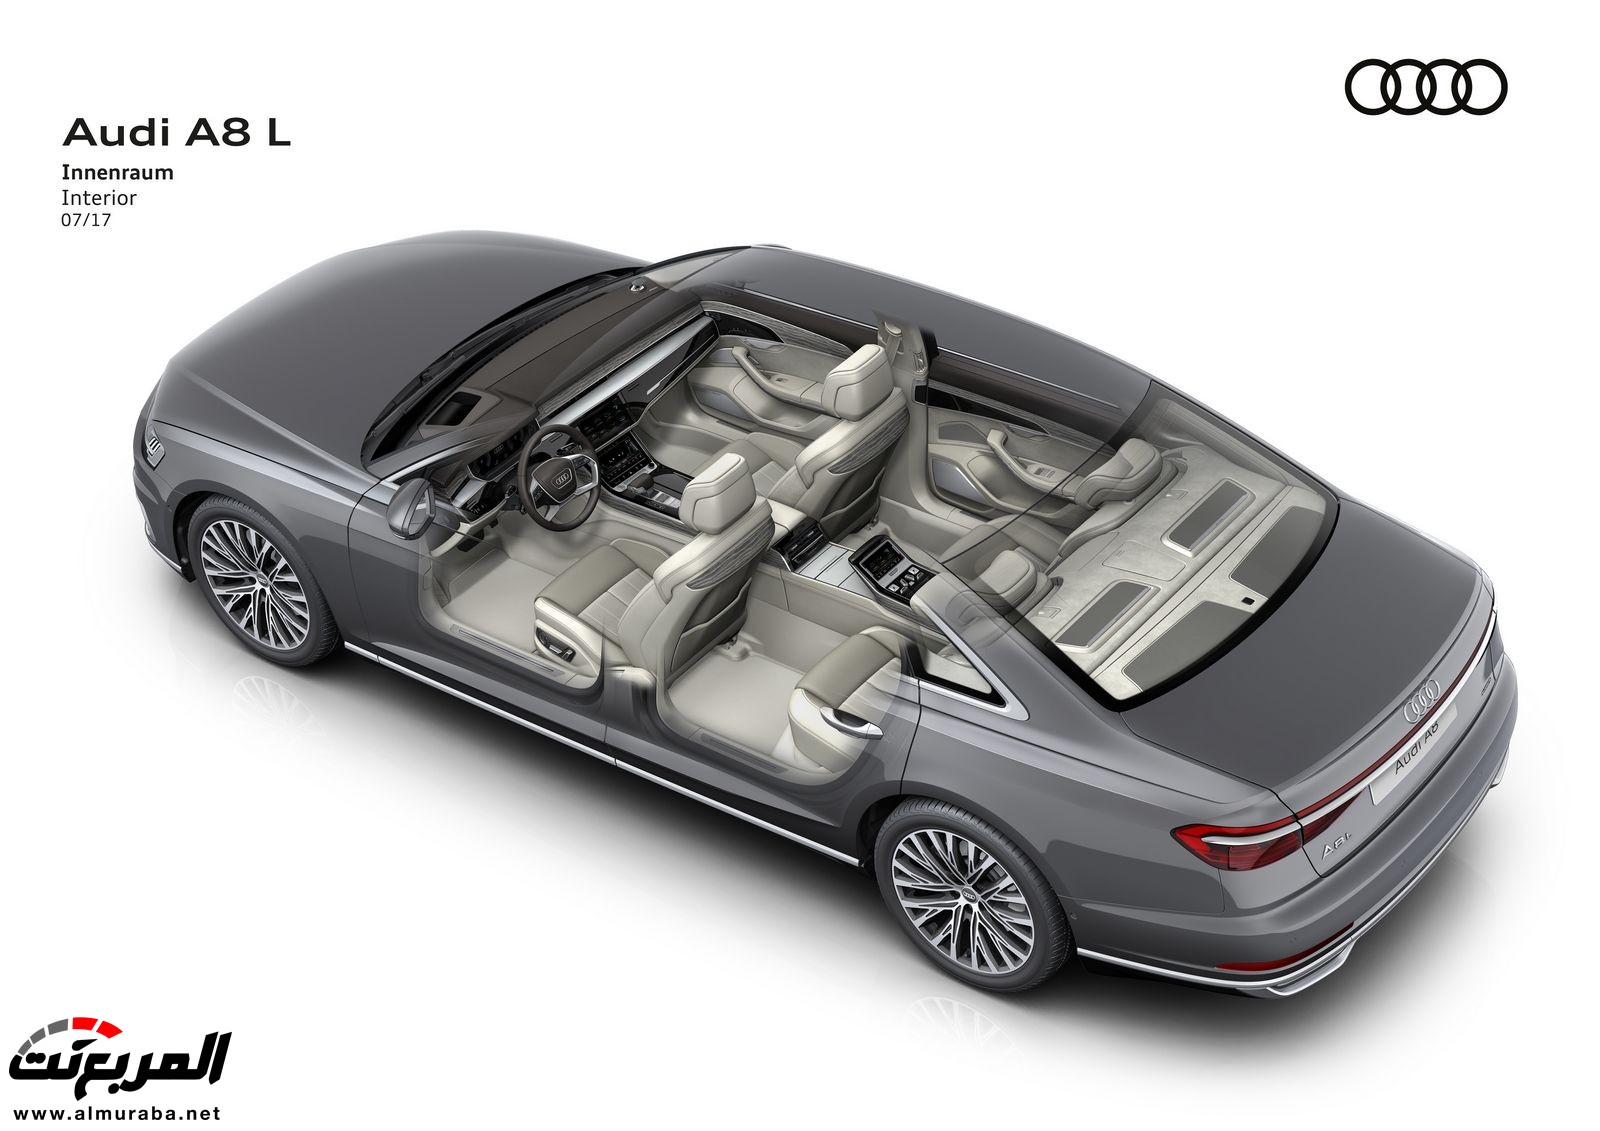 أودي A8 2018 الجديدة كلياً تكشف نفسها بتصميم وتقنيات متطورة "معلومات + 100 صورة" Audi A8 104